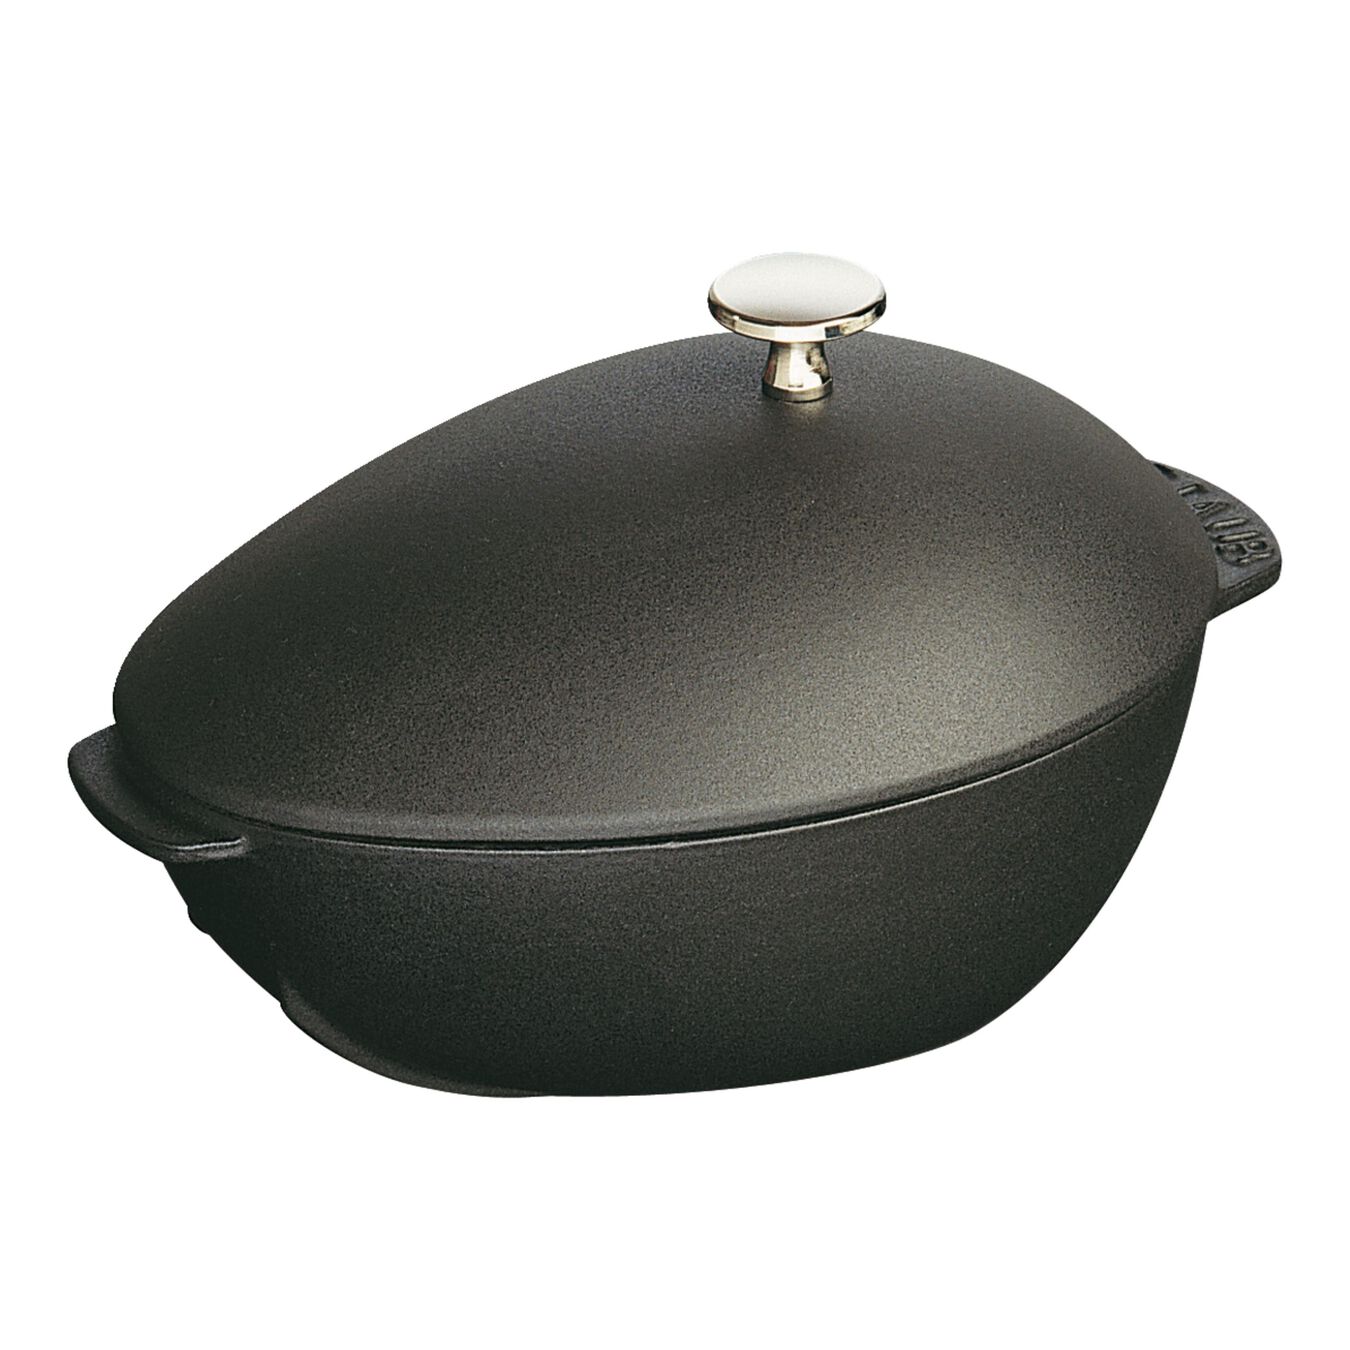 2 l cast iron oval Mussel pot, black,,large 1